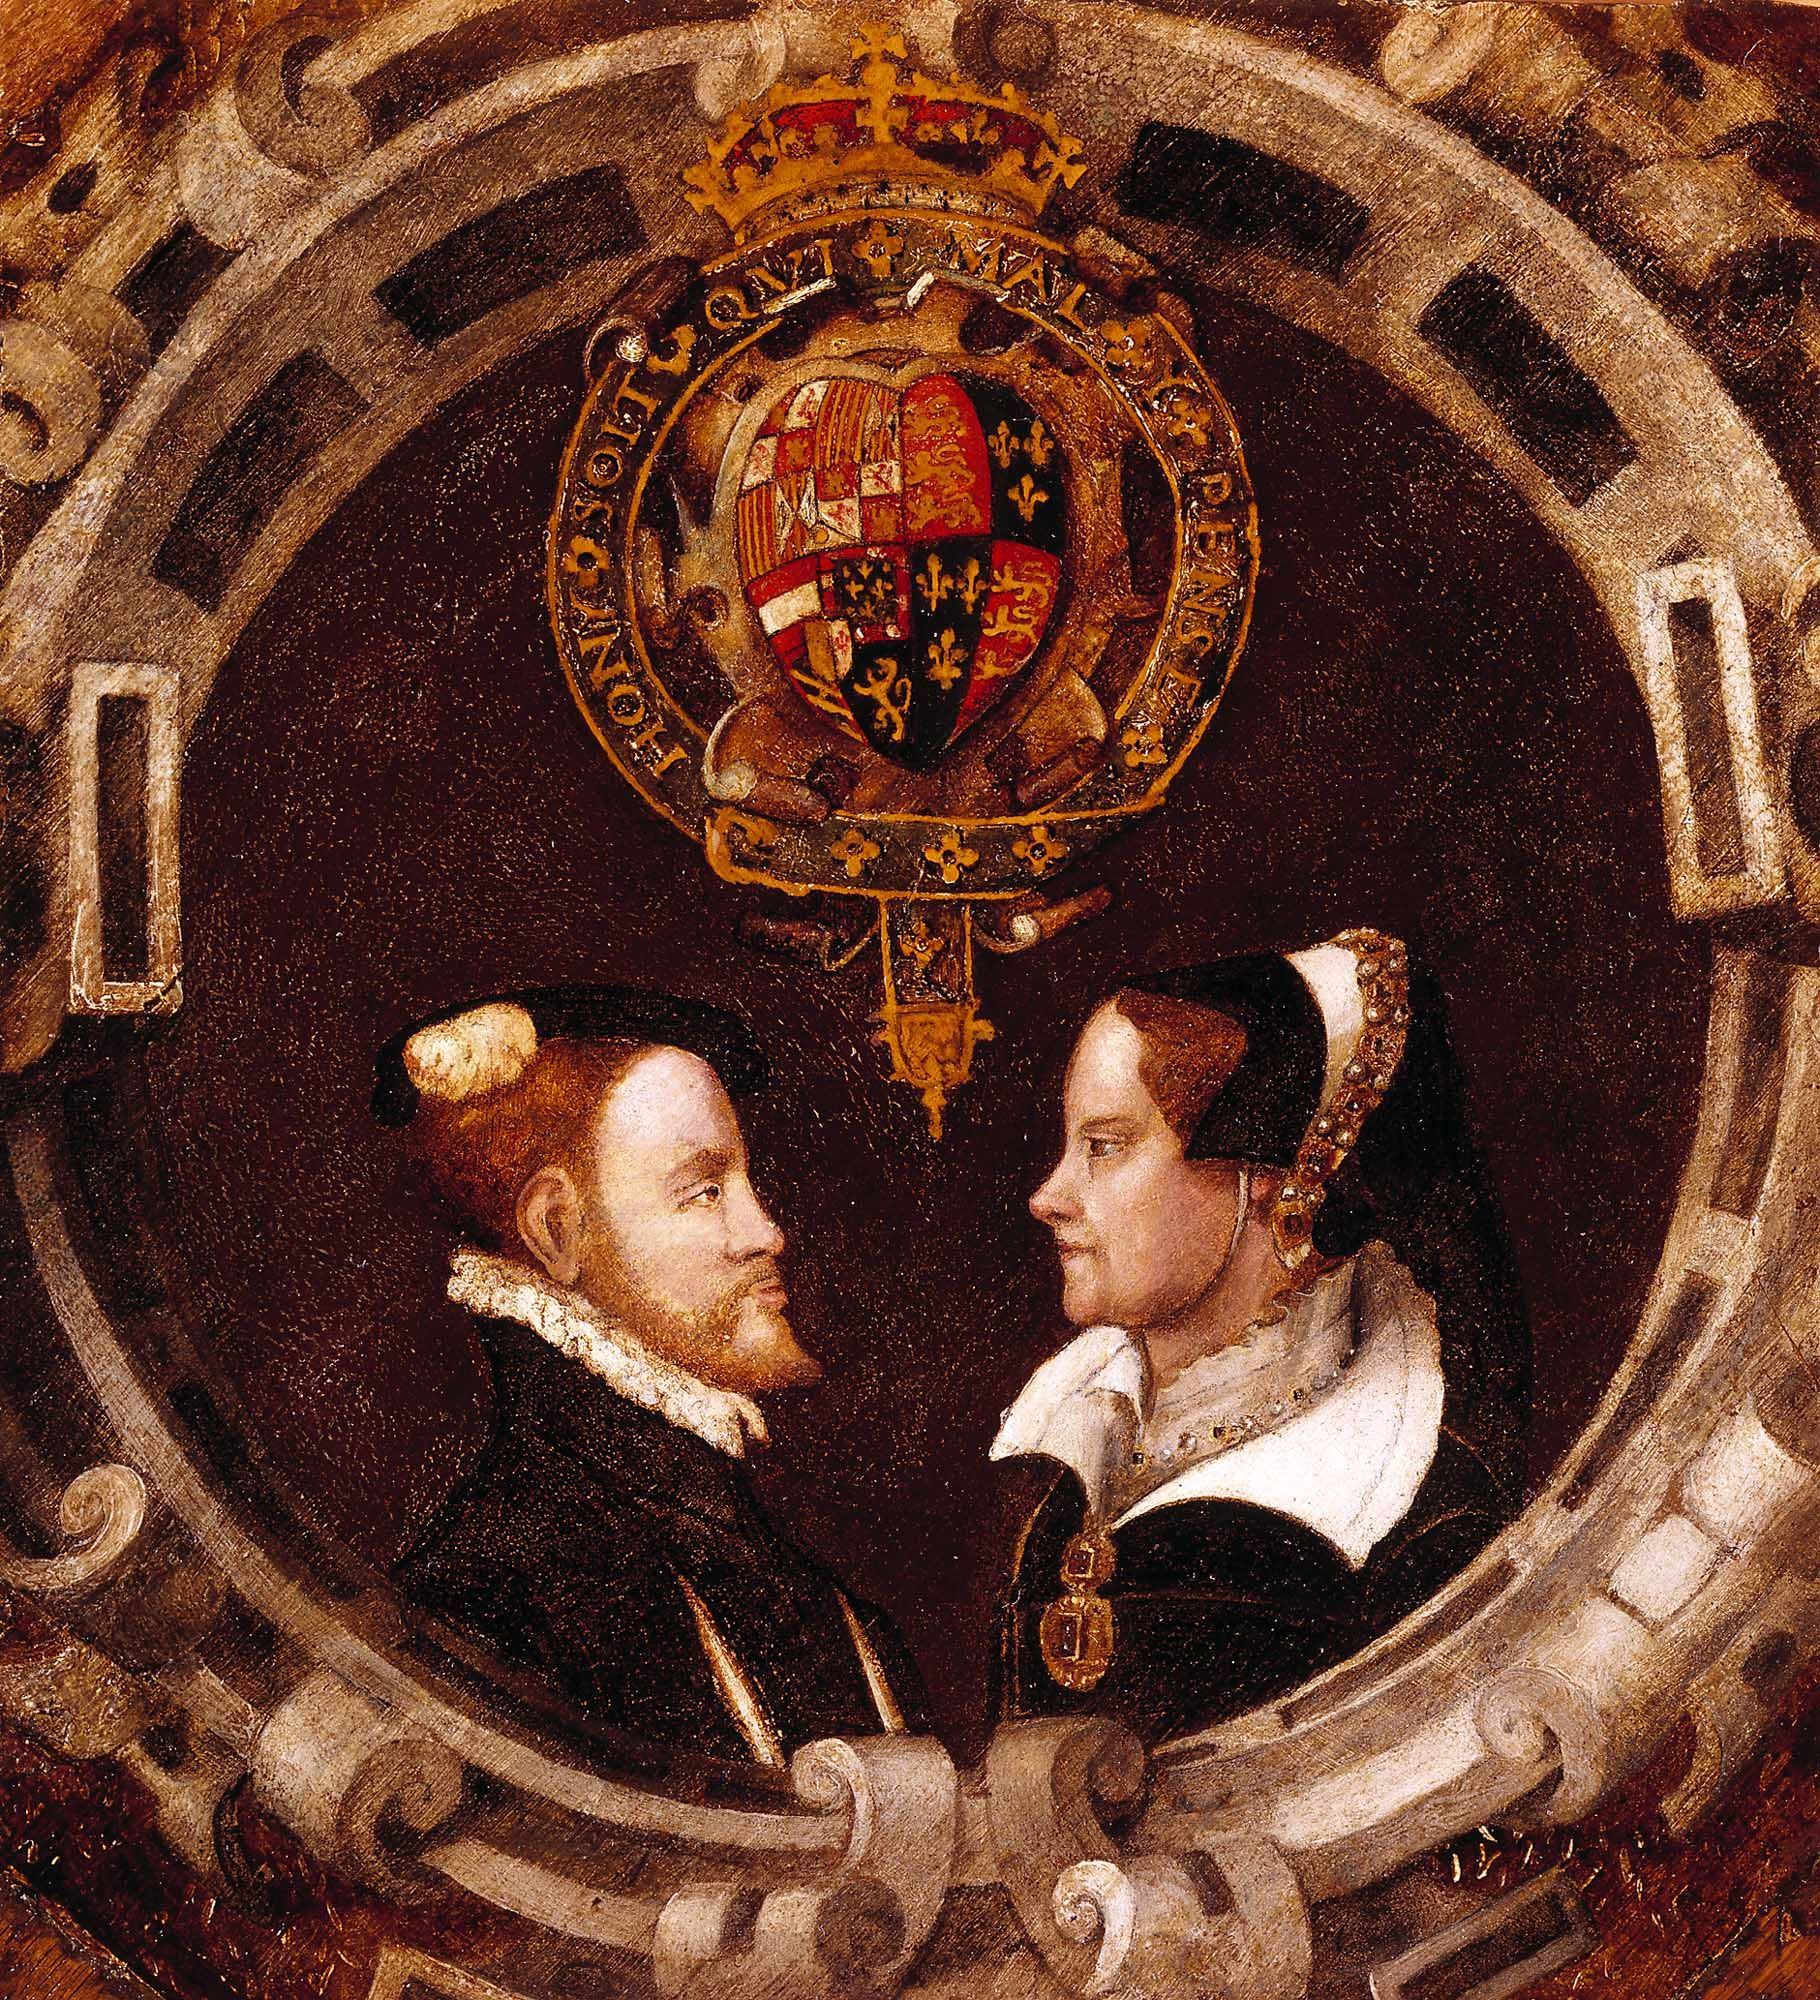 1555 - Mary Tudor, Queen of England